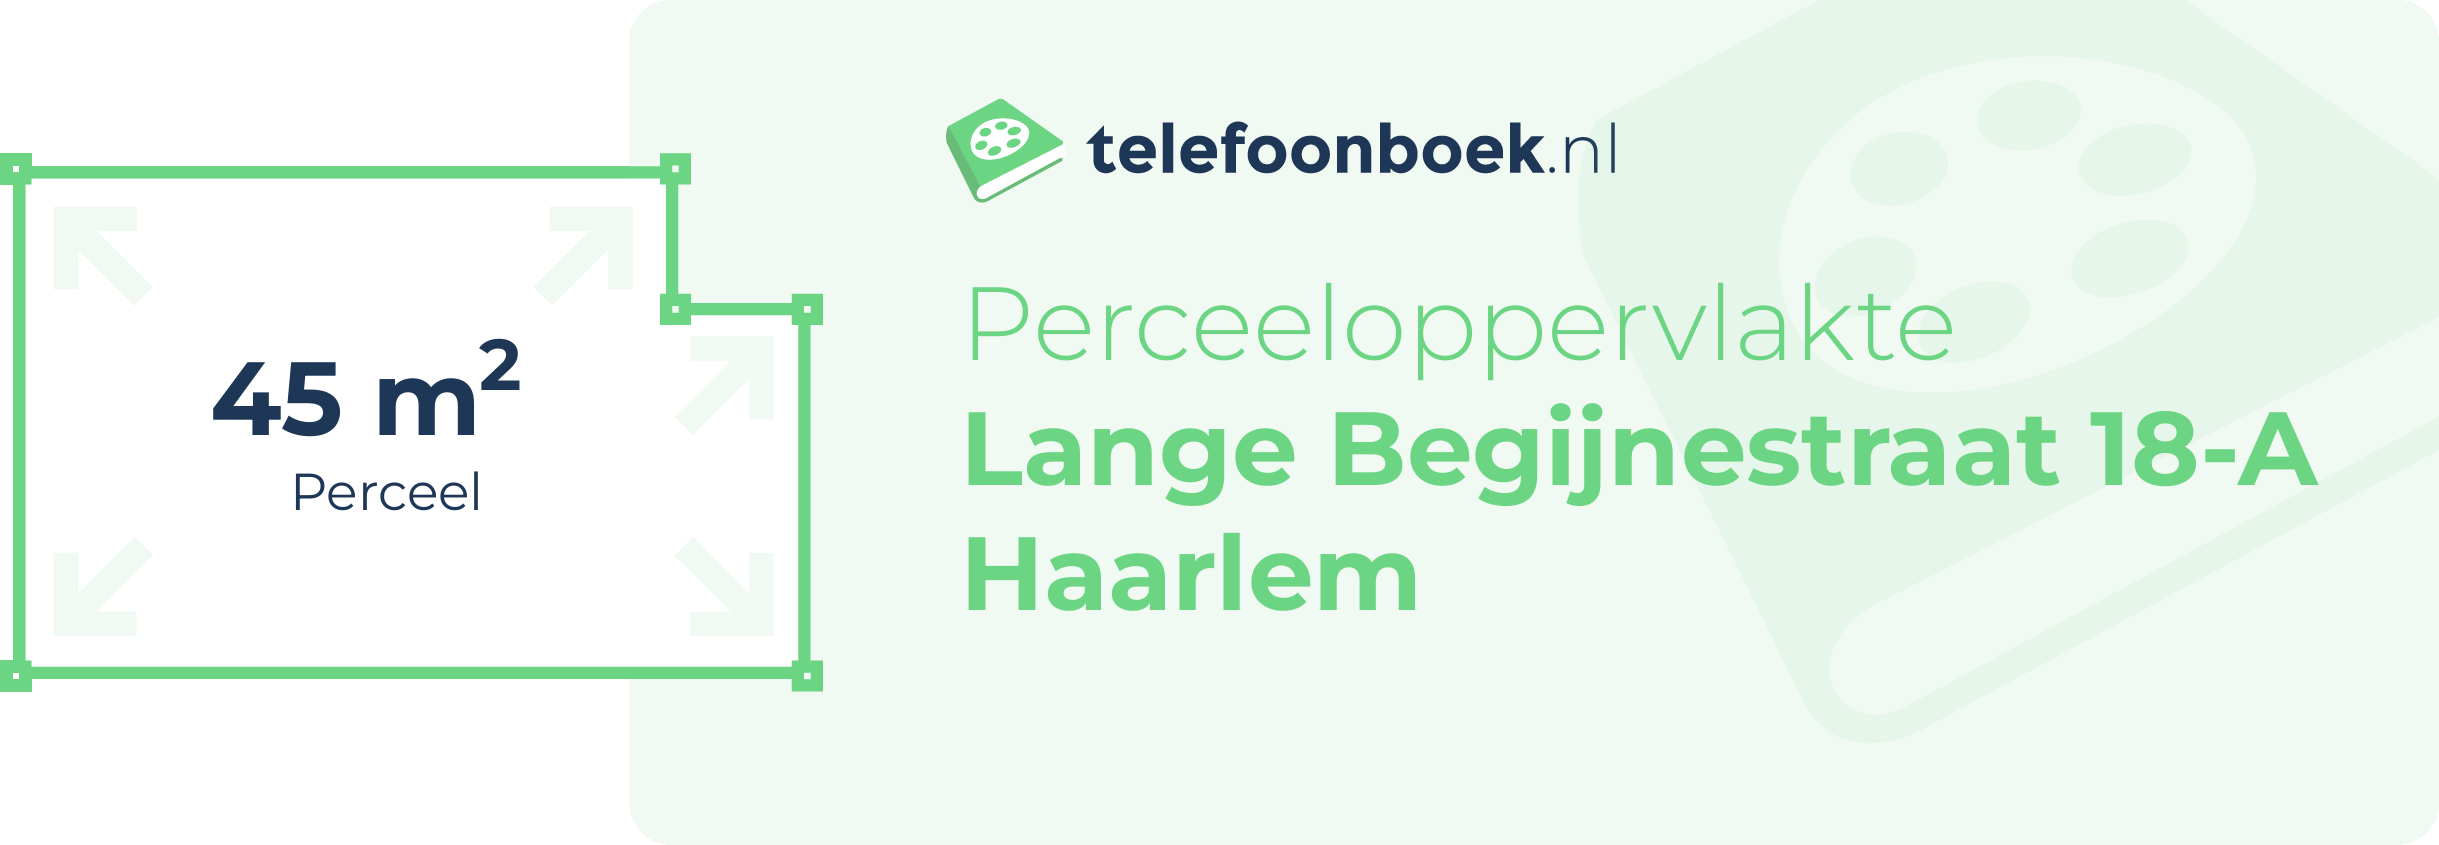 Perceeloppervlakte Lange Begijnestraat 18-A Haarlem